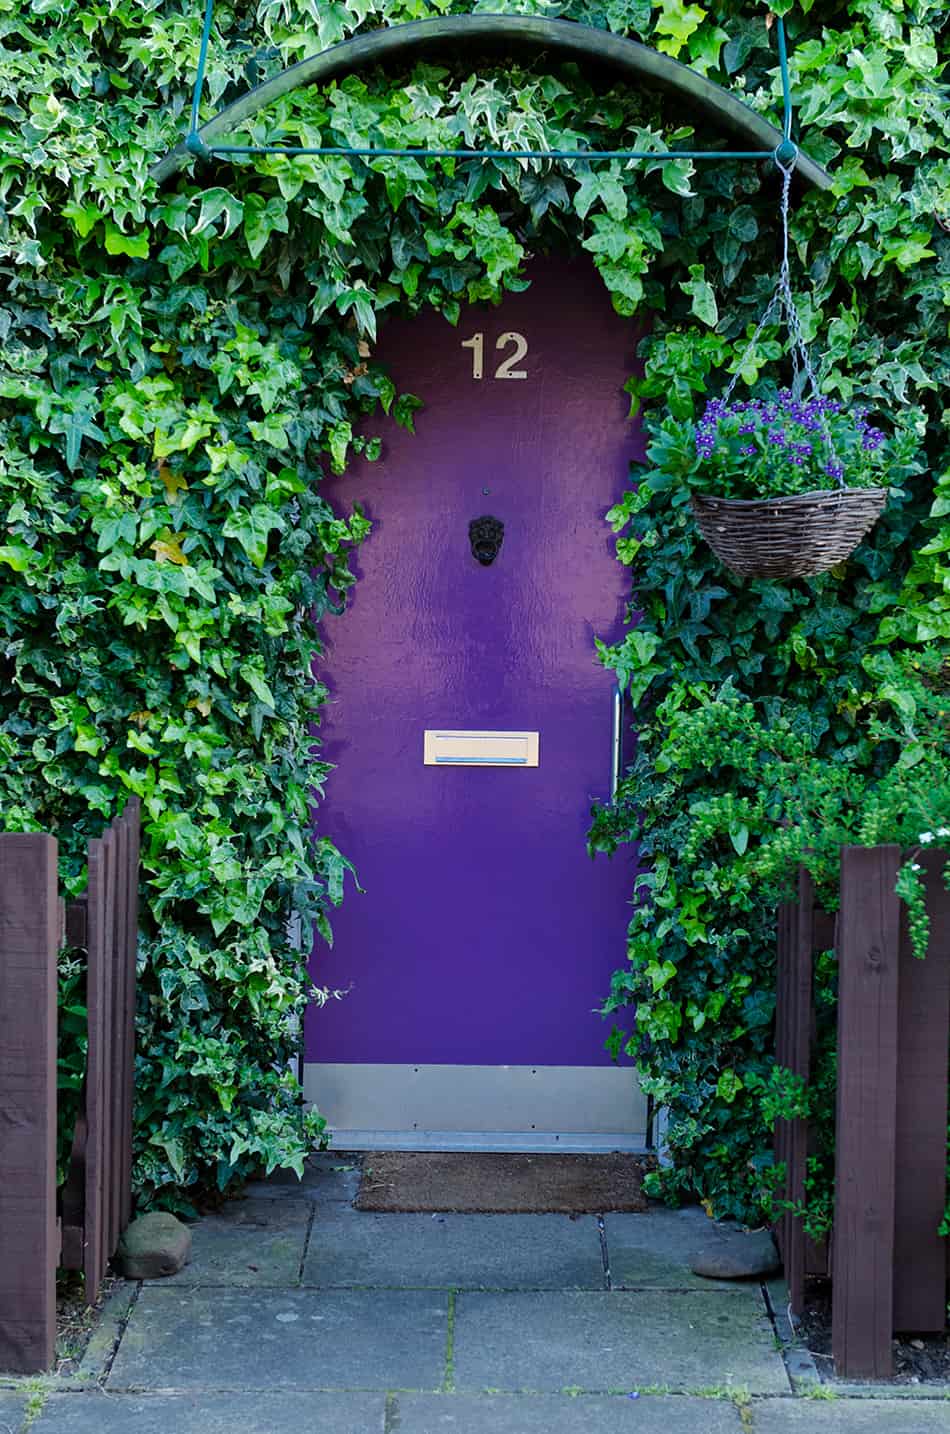 紫色門裝飾有懸掛植物